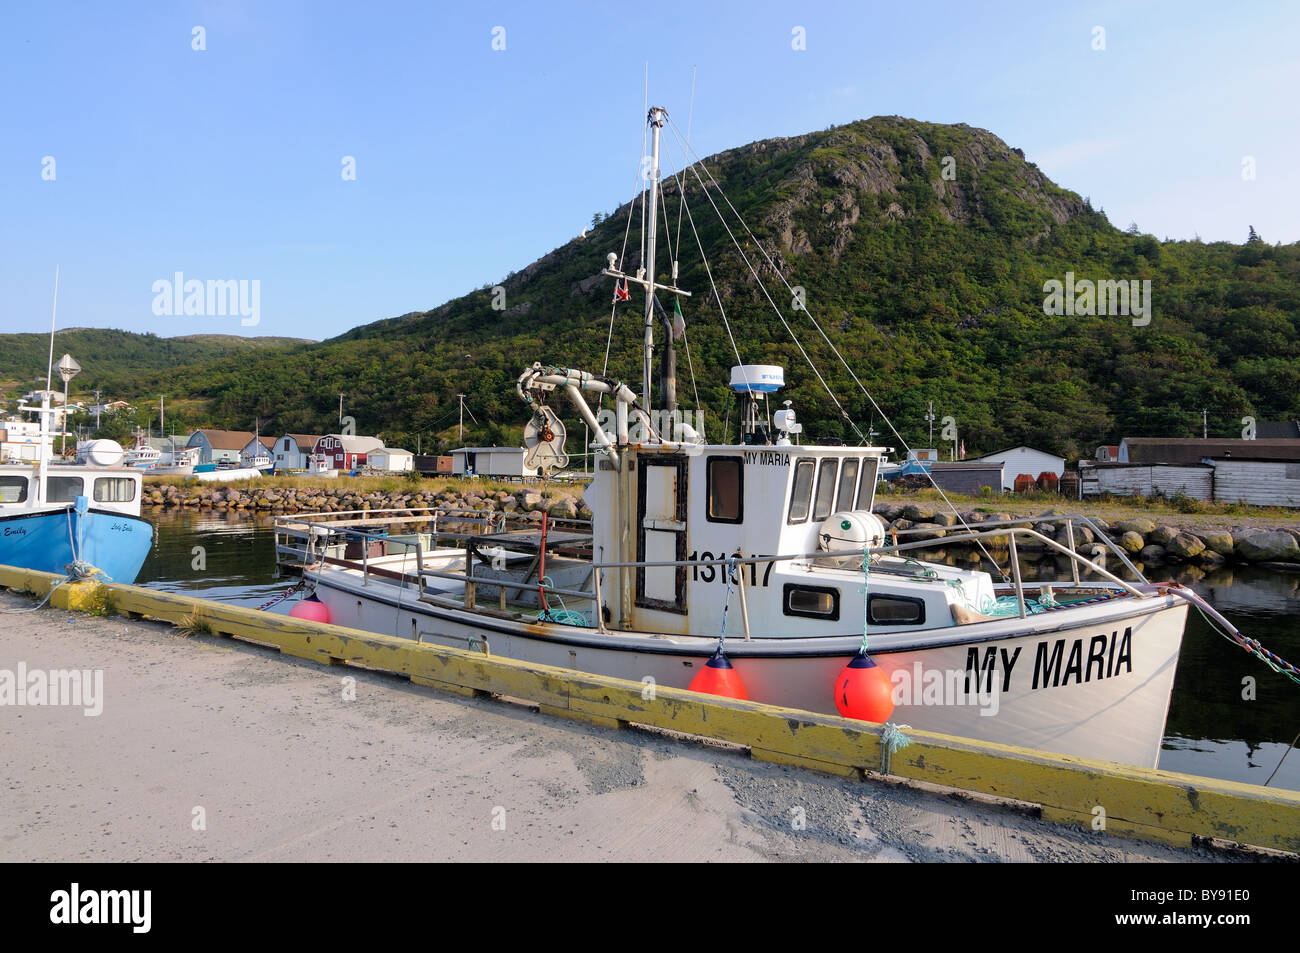 Angelboot/Fischerboot im kleinen Hafen Maddox Cove Neufundland Kanada angedockt Stockfoto